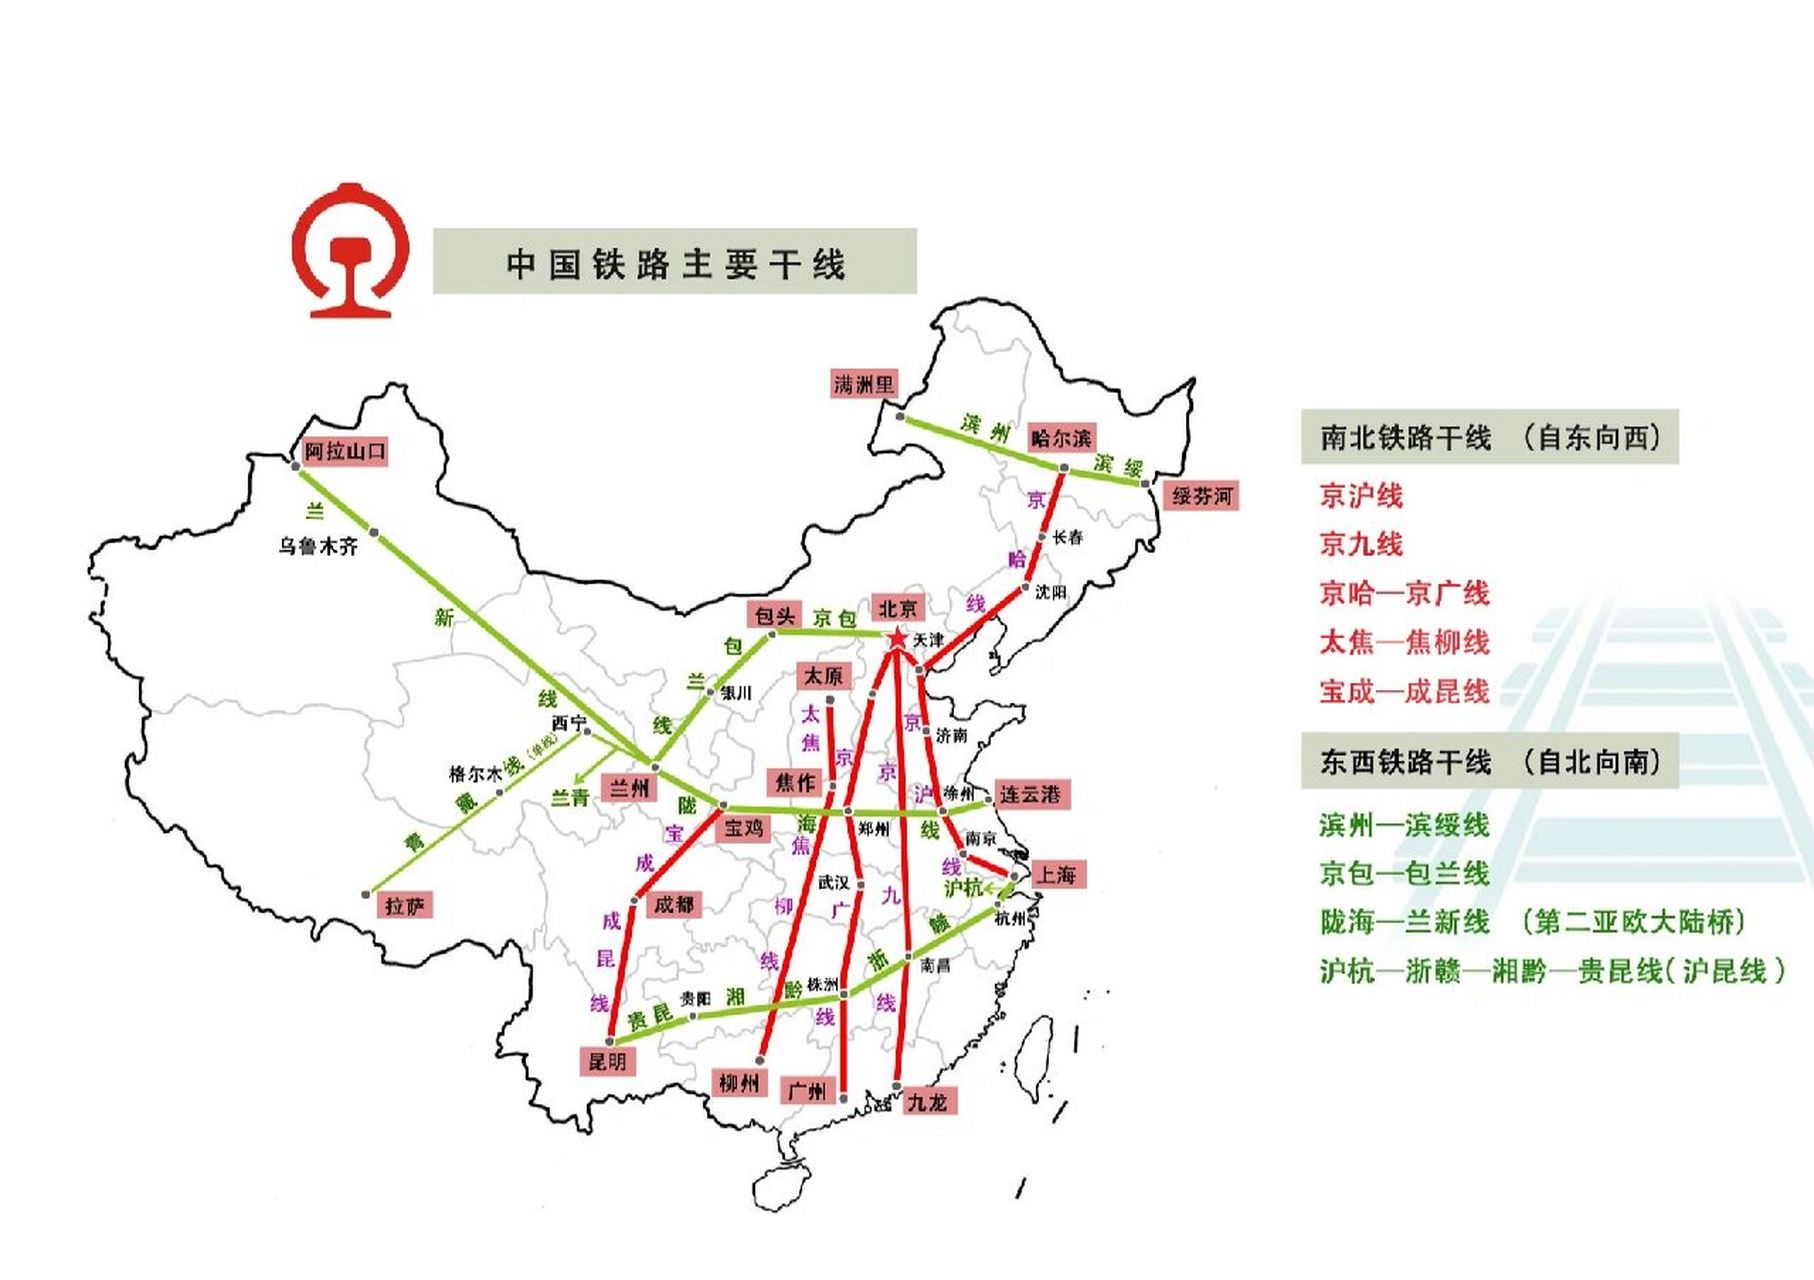 中国的铁路干线分布图图片